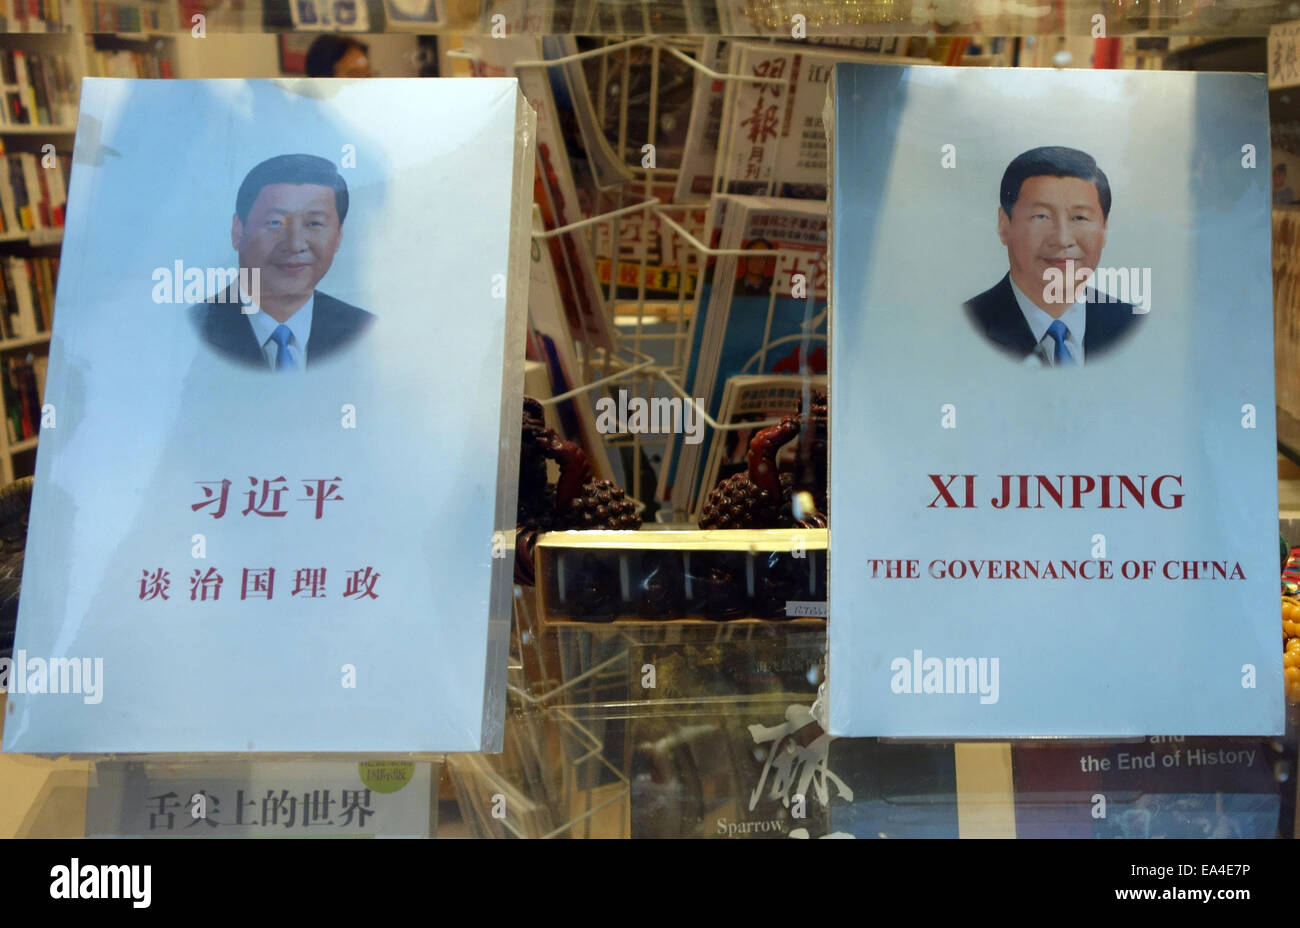 Buch "The Governance of China" von chinesischen Staatspräsidenten Xi Jinping in Chinatown Schaufenster, London Stockfoto